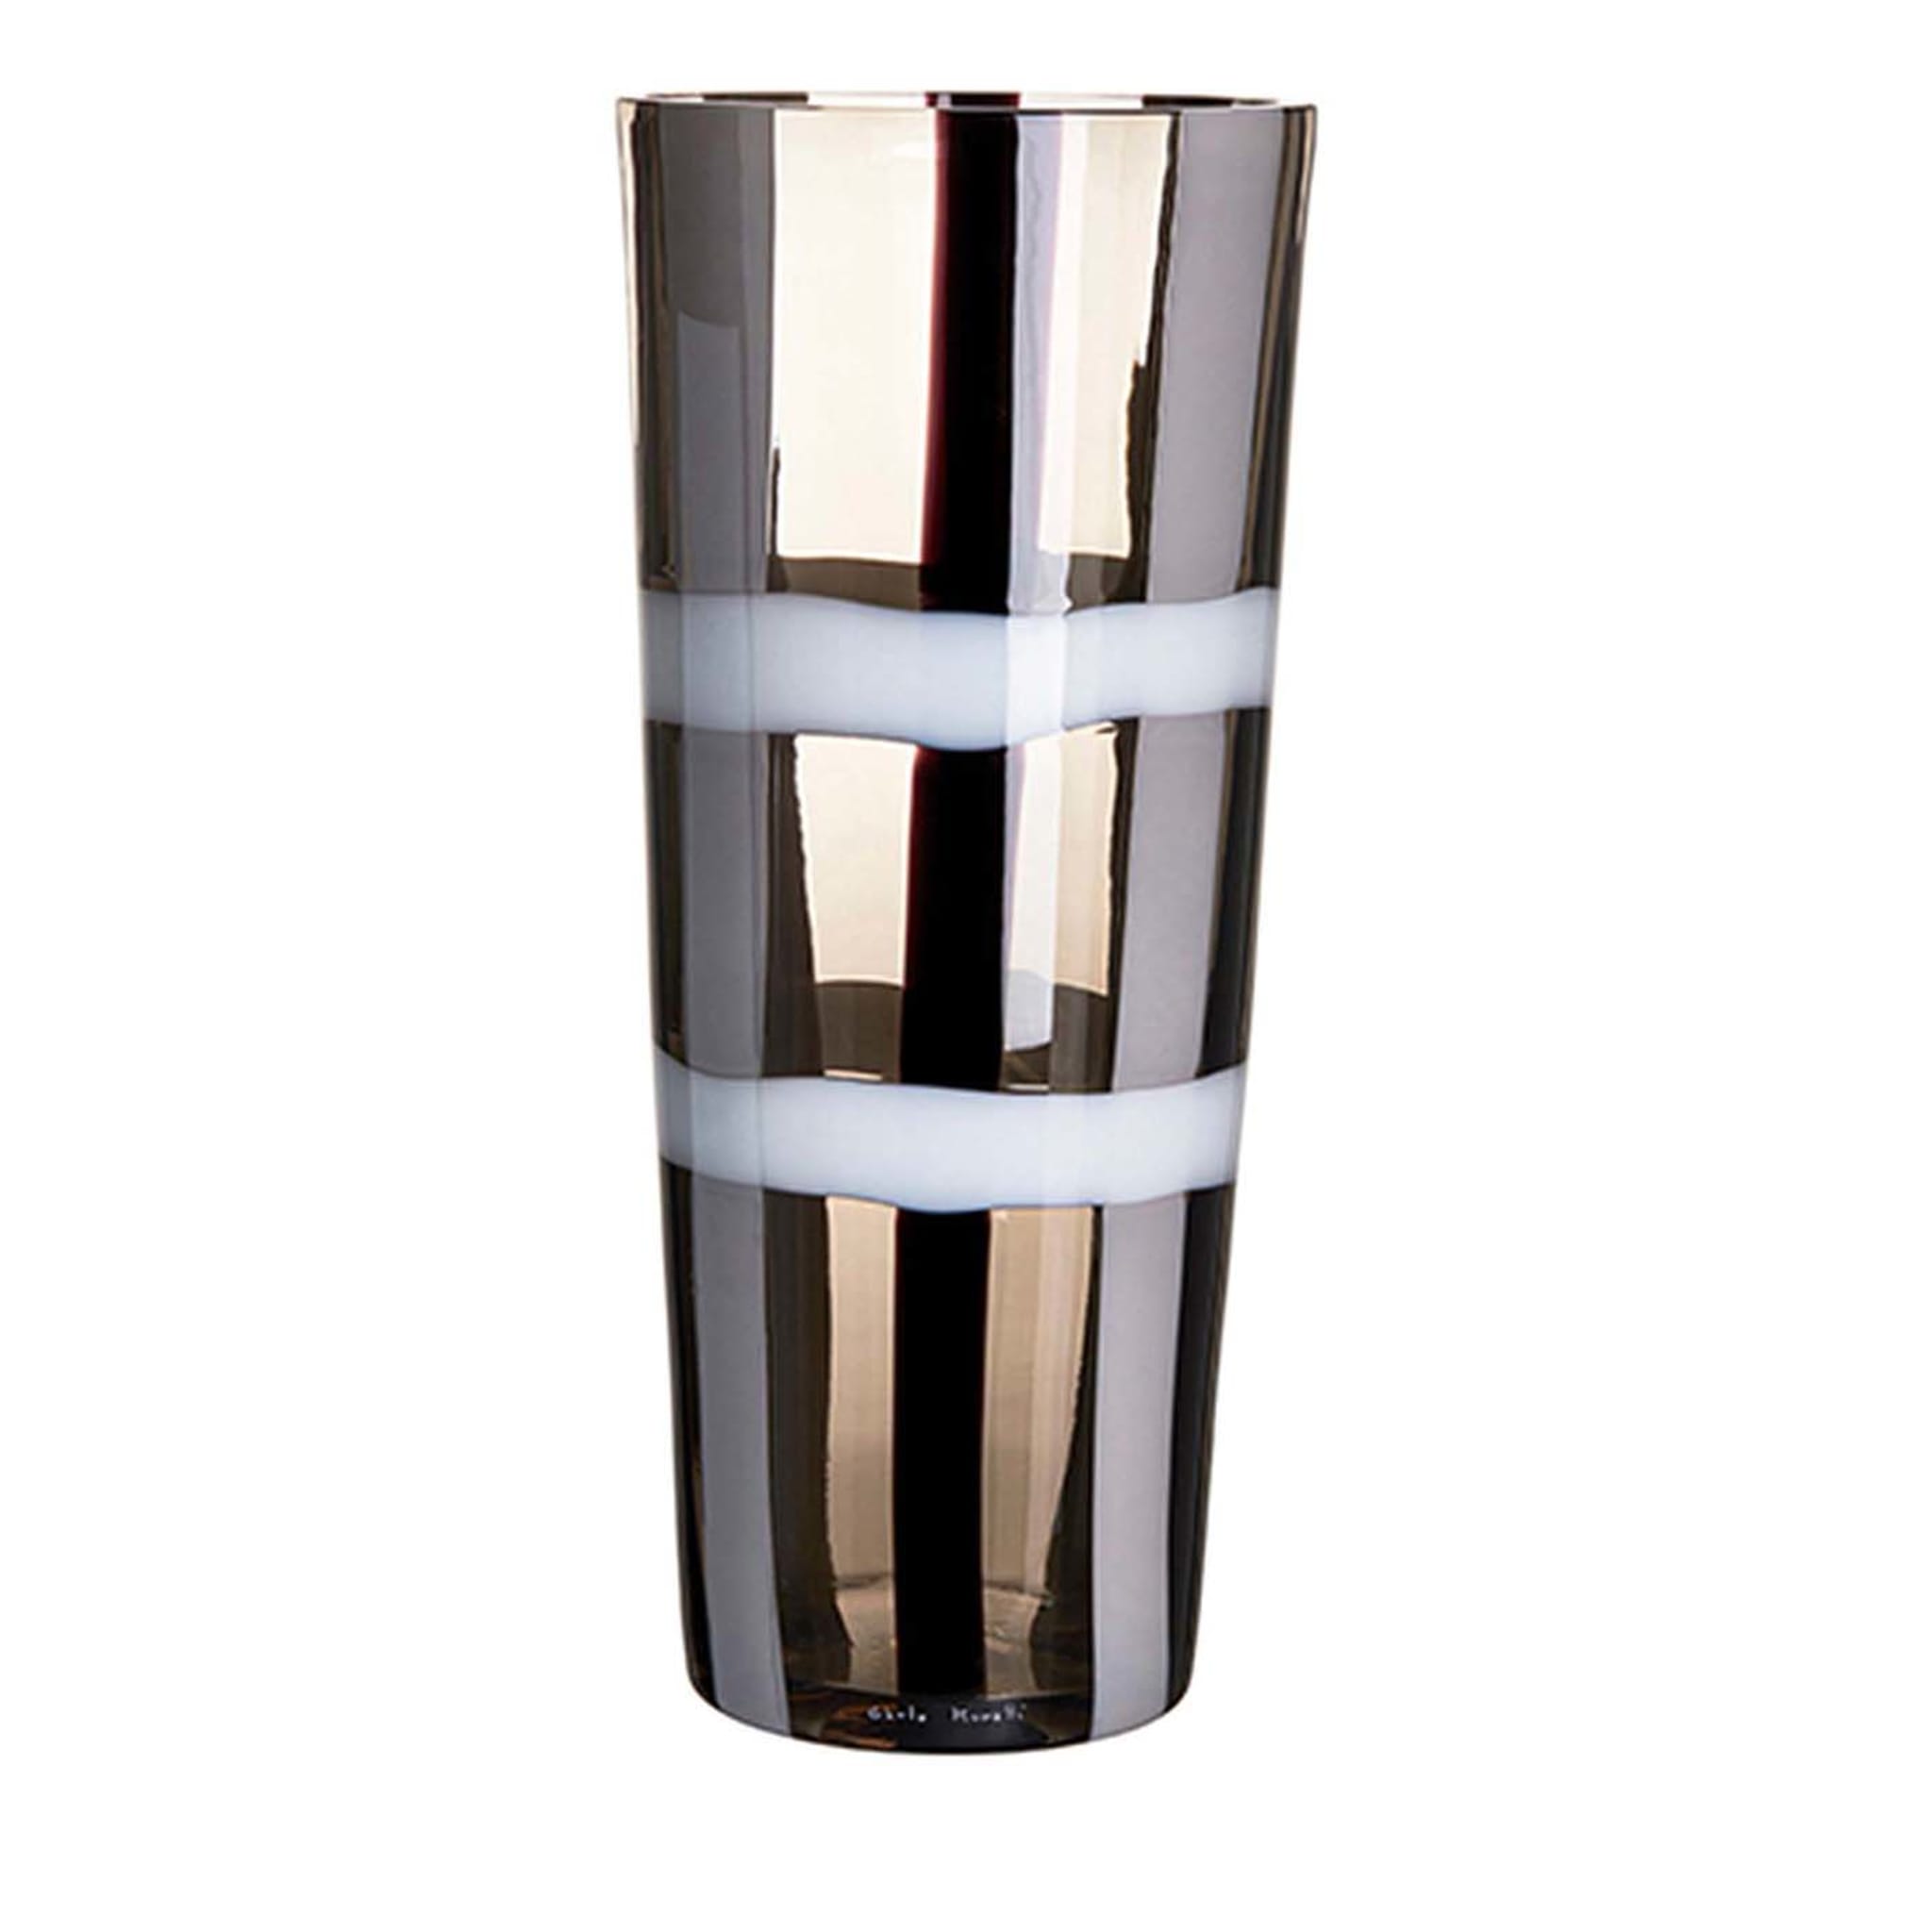 Troncocono Große Vase mit schwarzen und weißen Streifen von Carlo Moretti - Hauptansicht